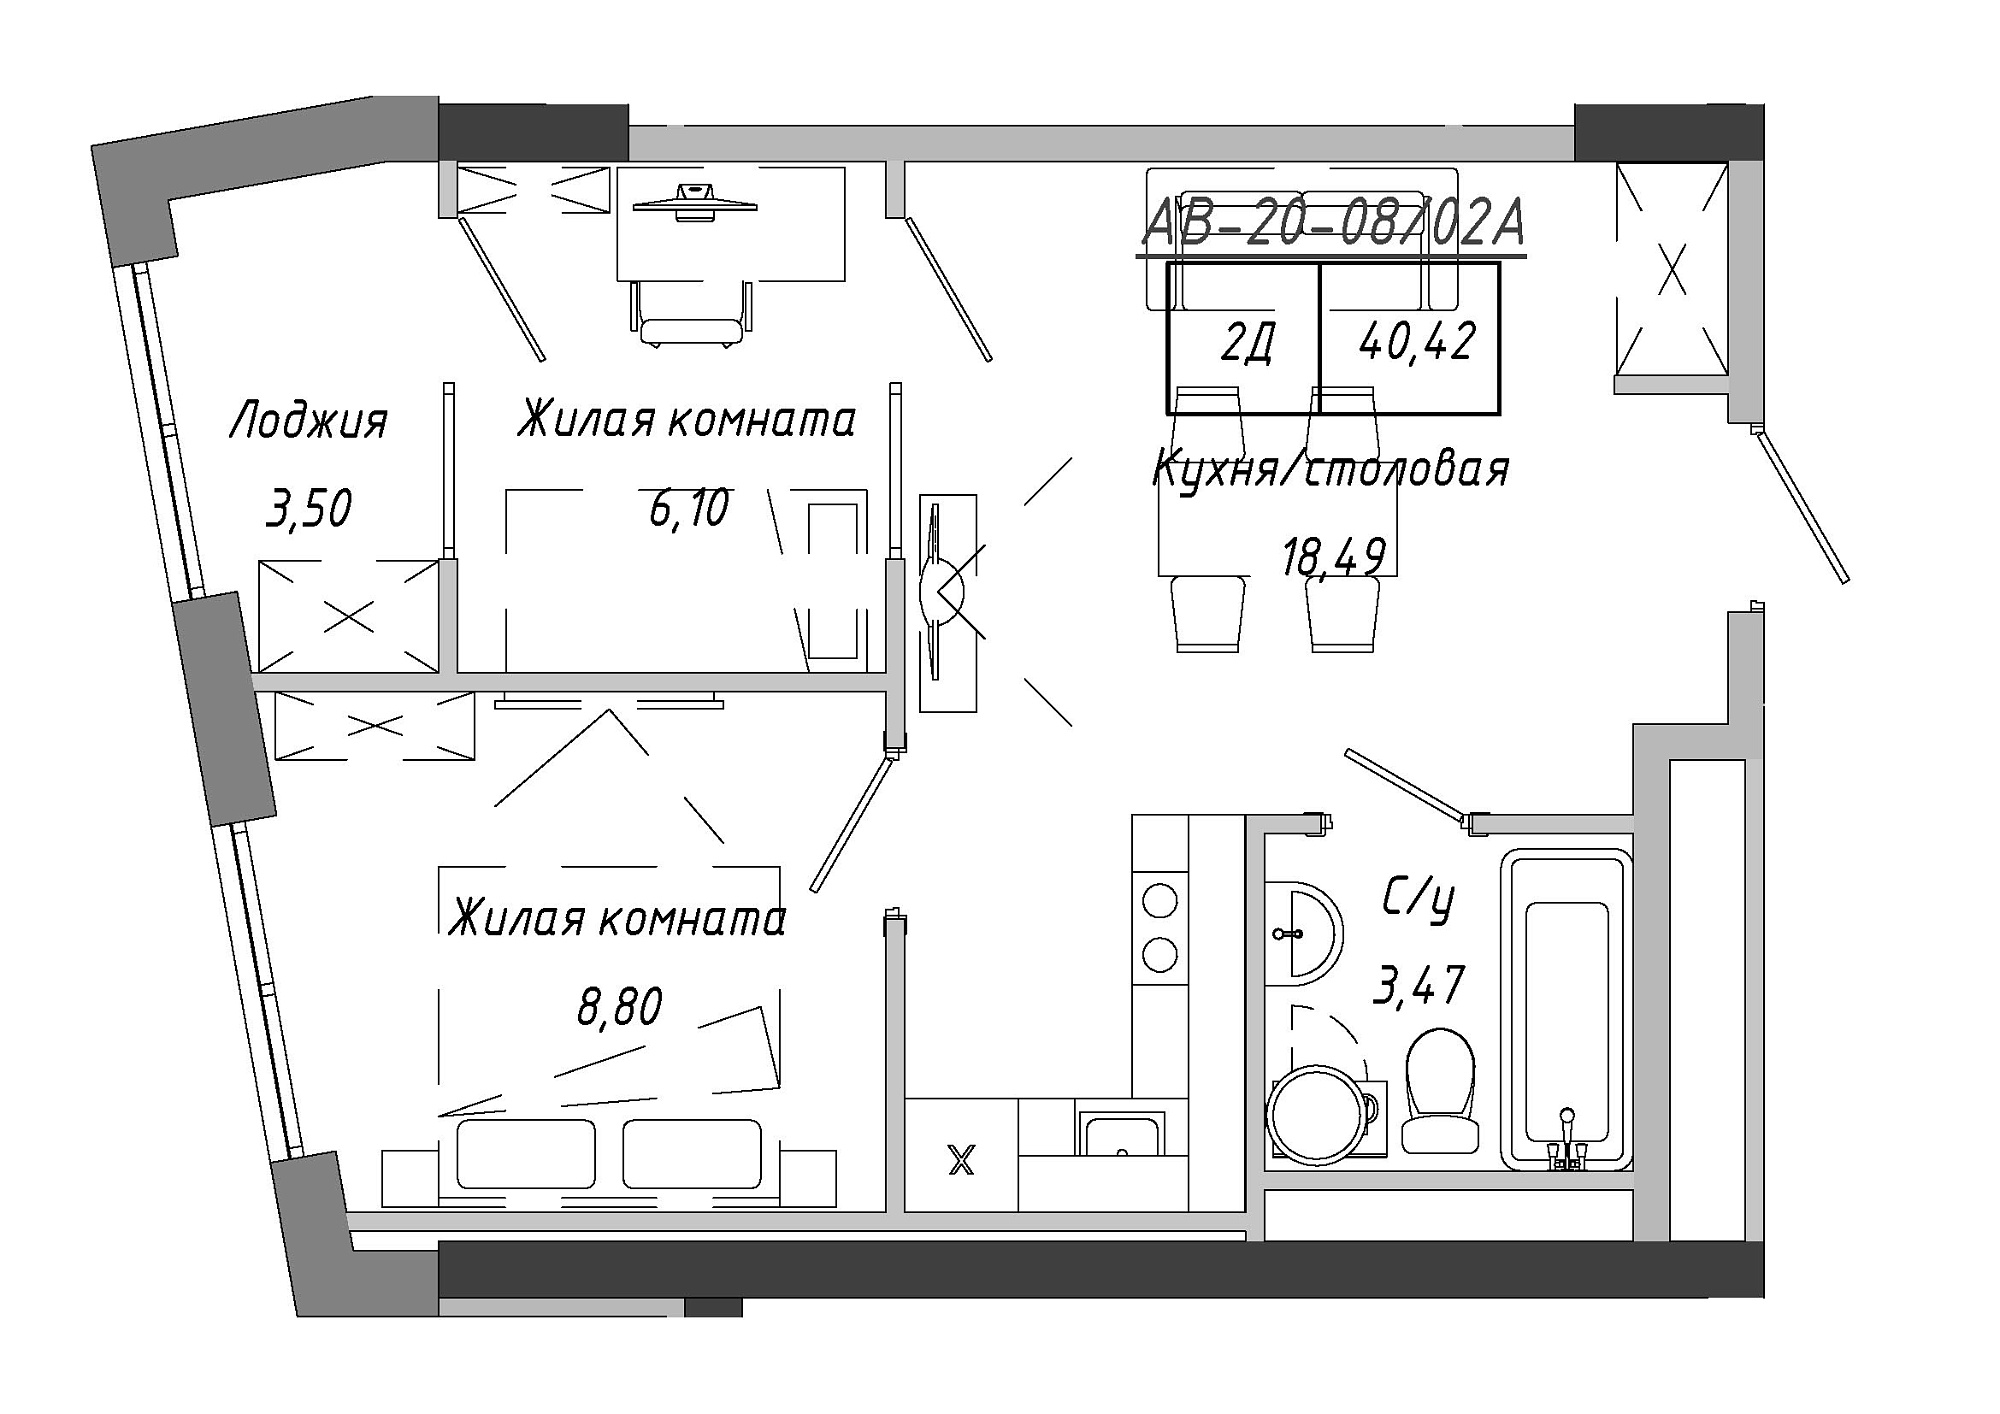 Планування 2-к квартира площею 41.9м2, AB-20-08/0002а.